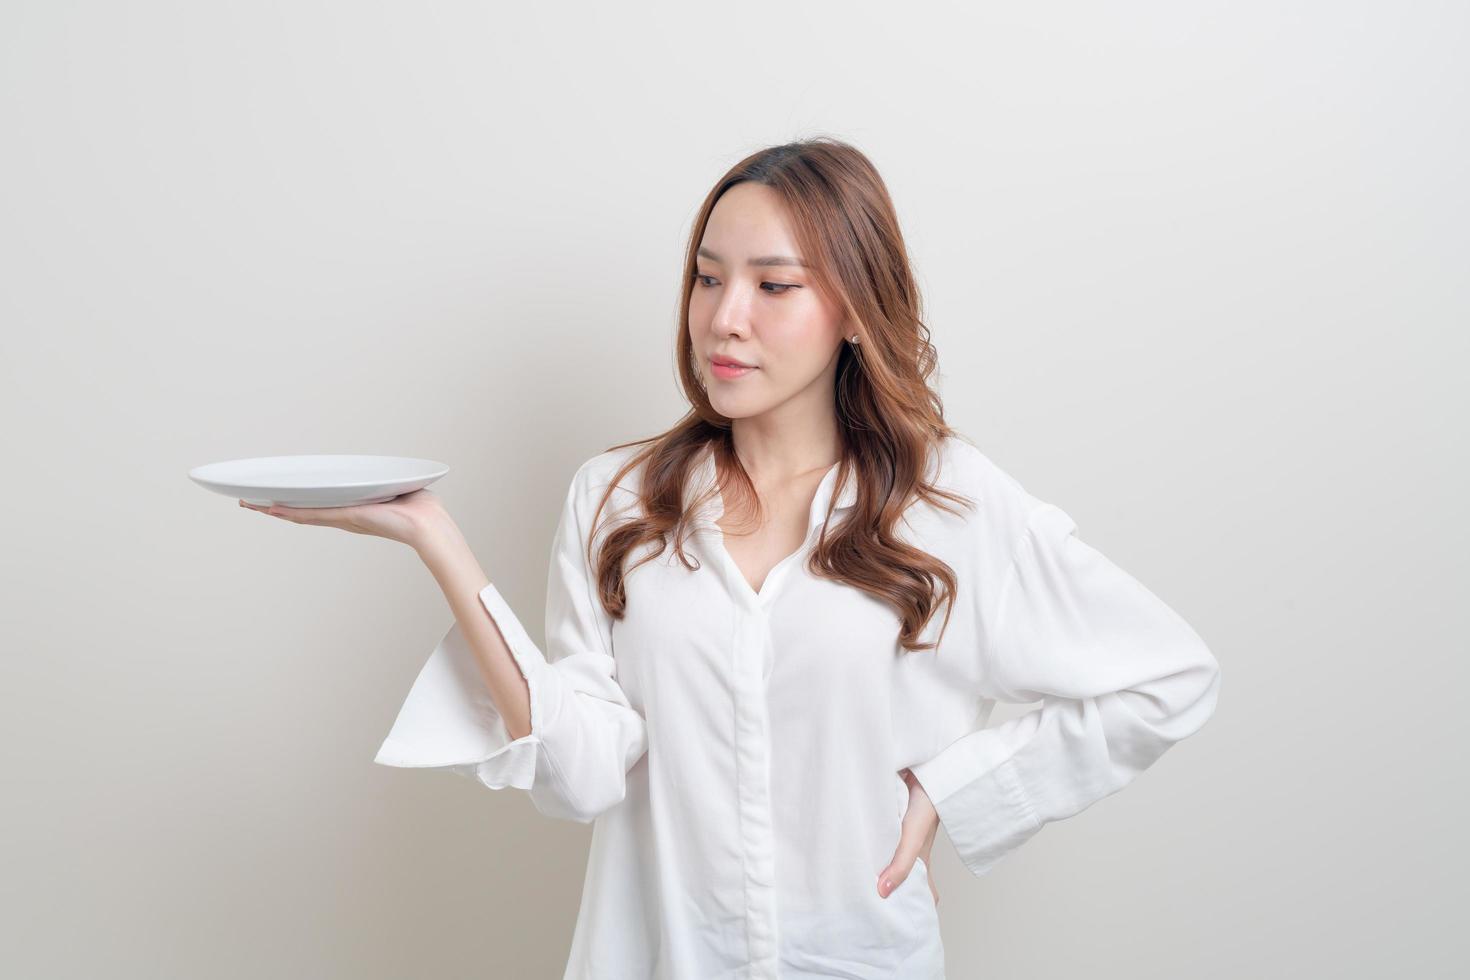 portrait belle femme asiatique tenant une assiette vide photo